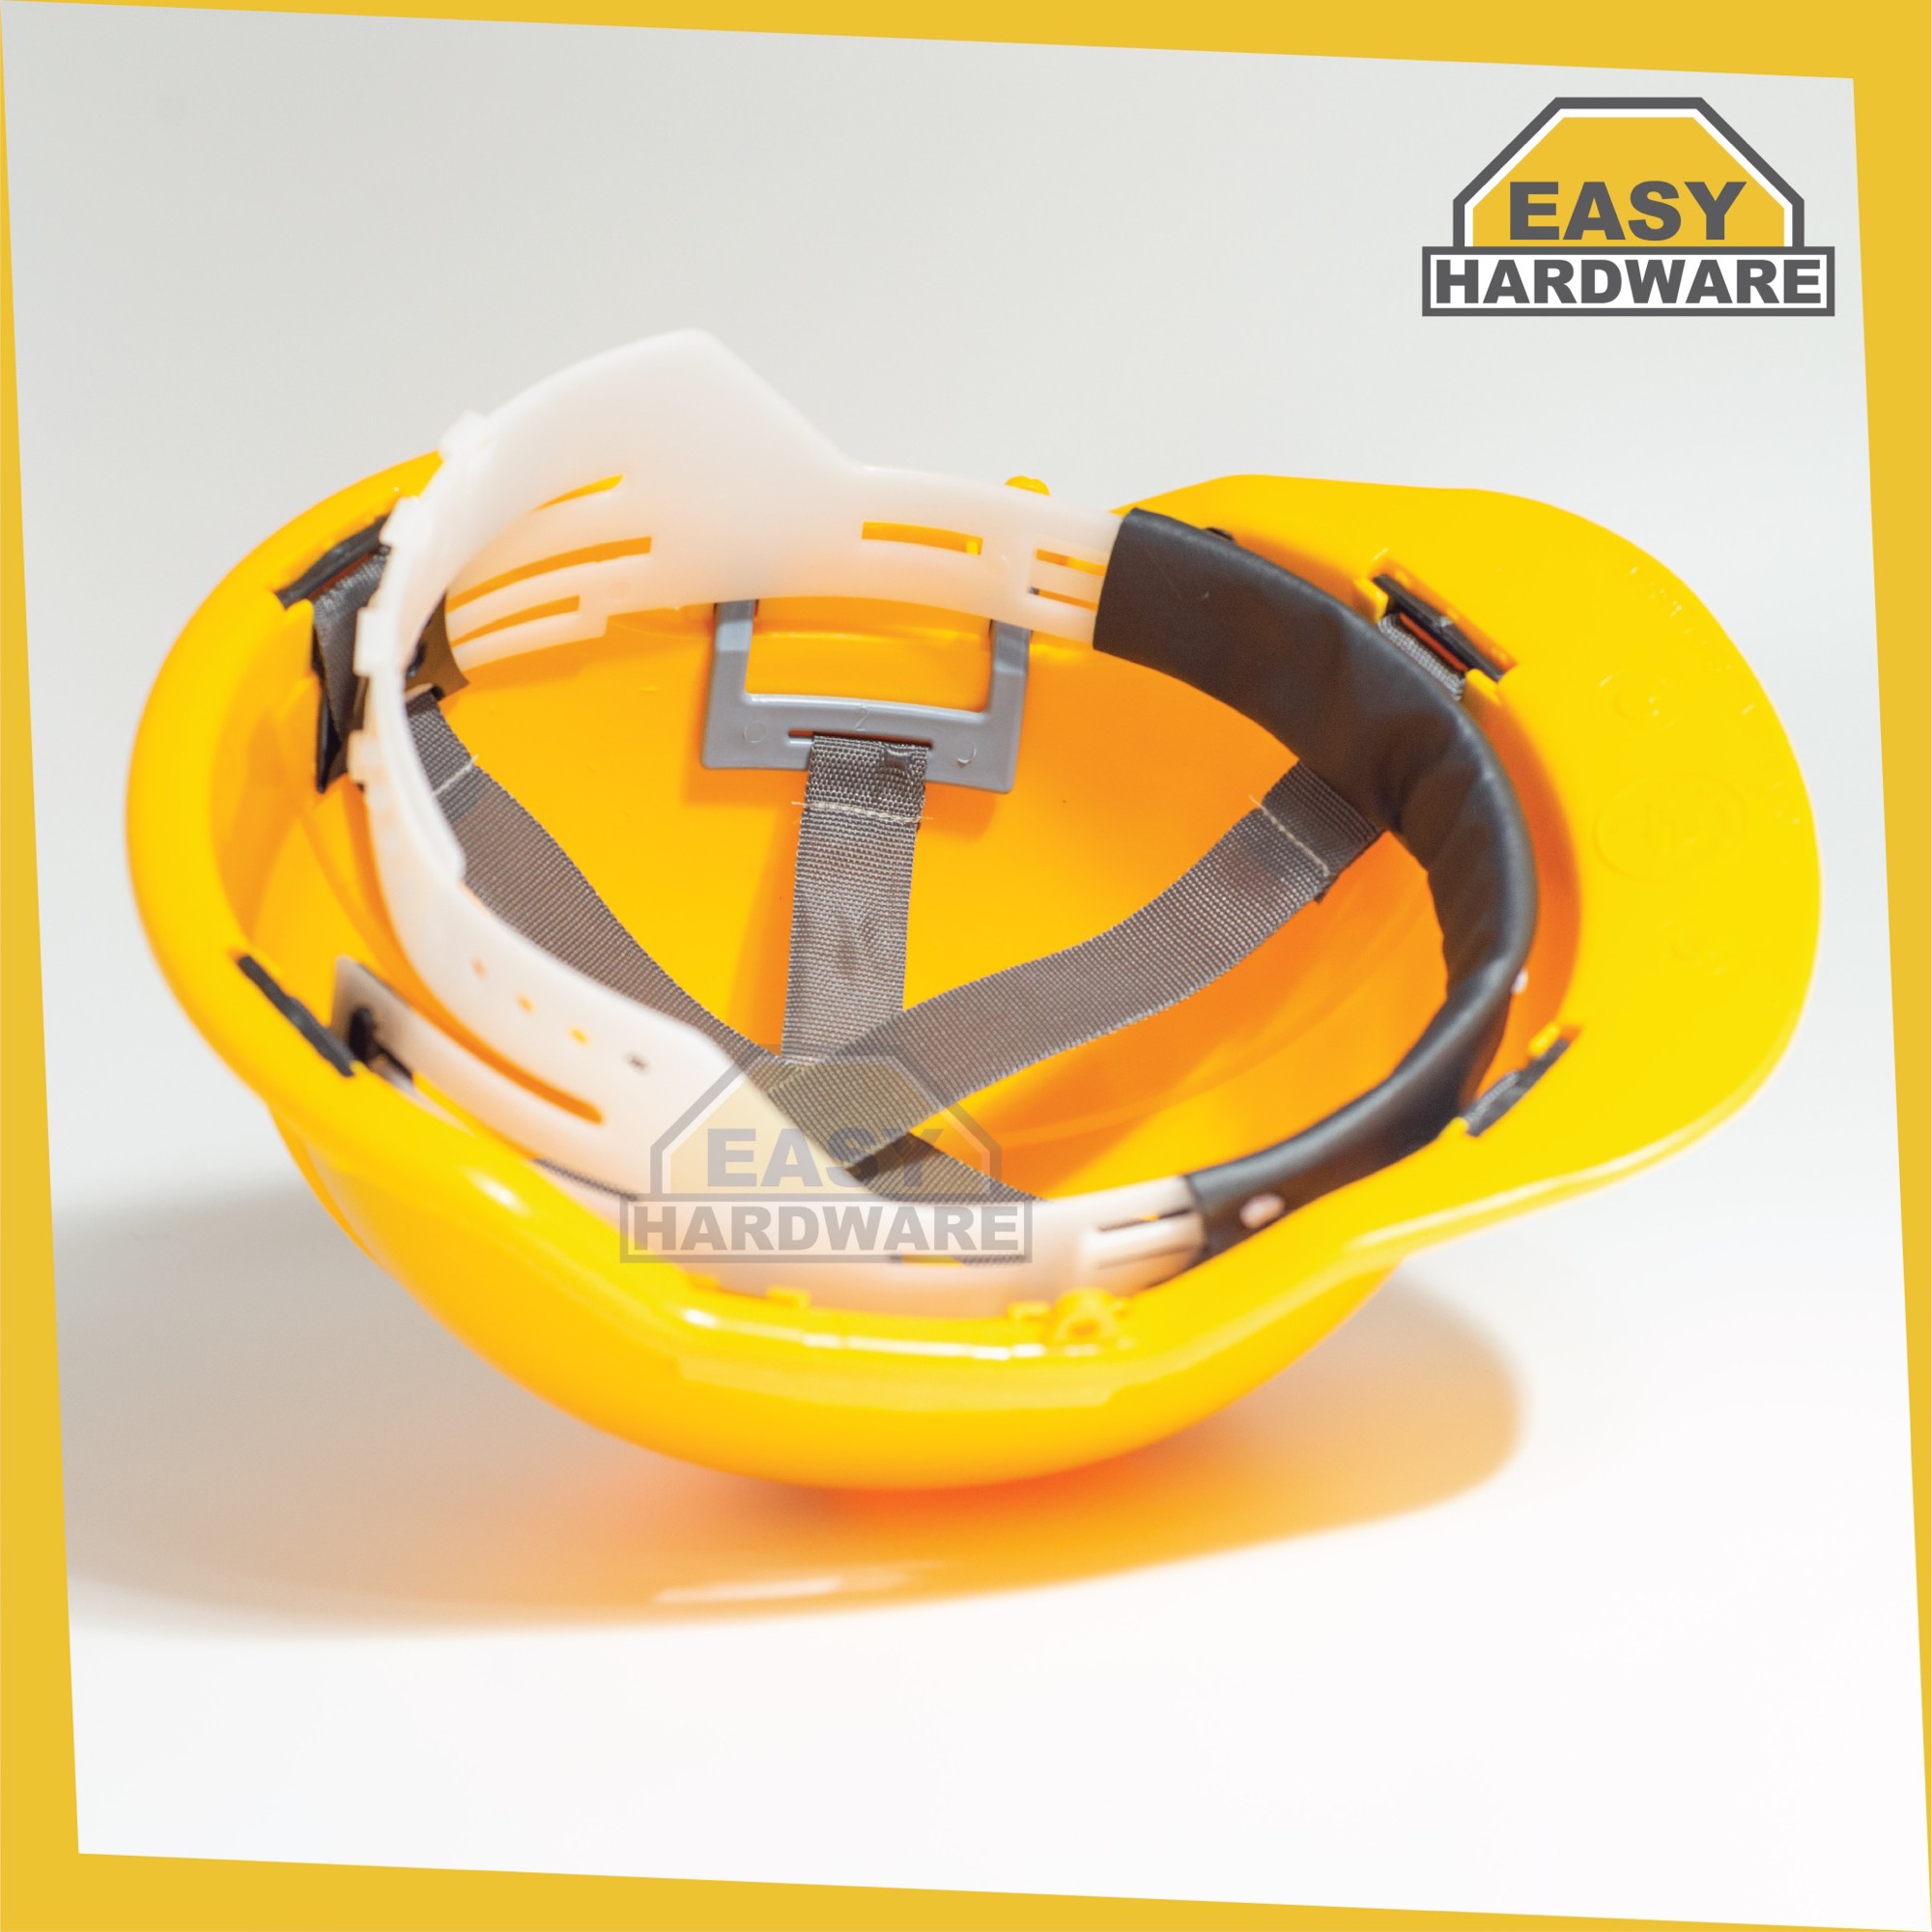 หมวกนิรภัย สีเหลือง. Yellow construction helmet protect your head from any kinds of cases